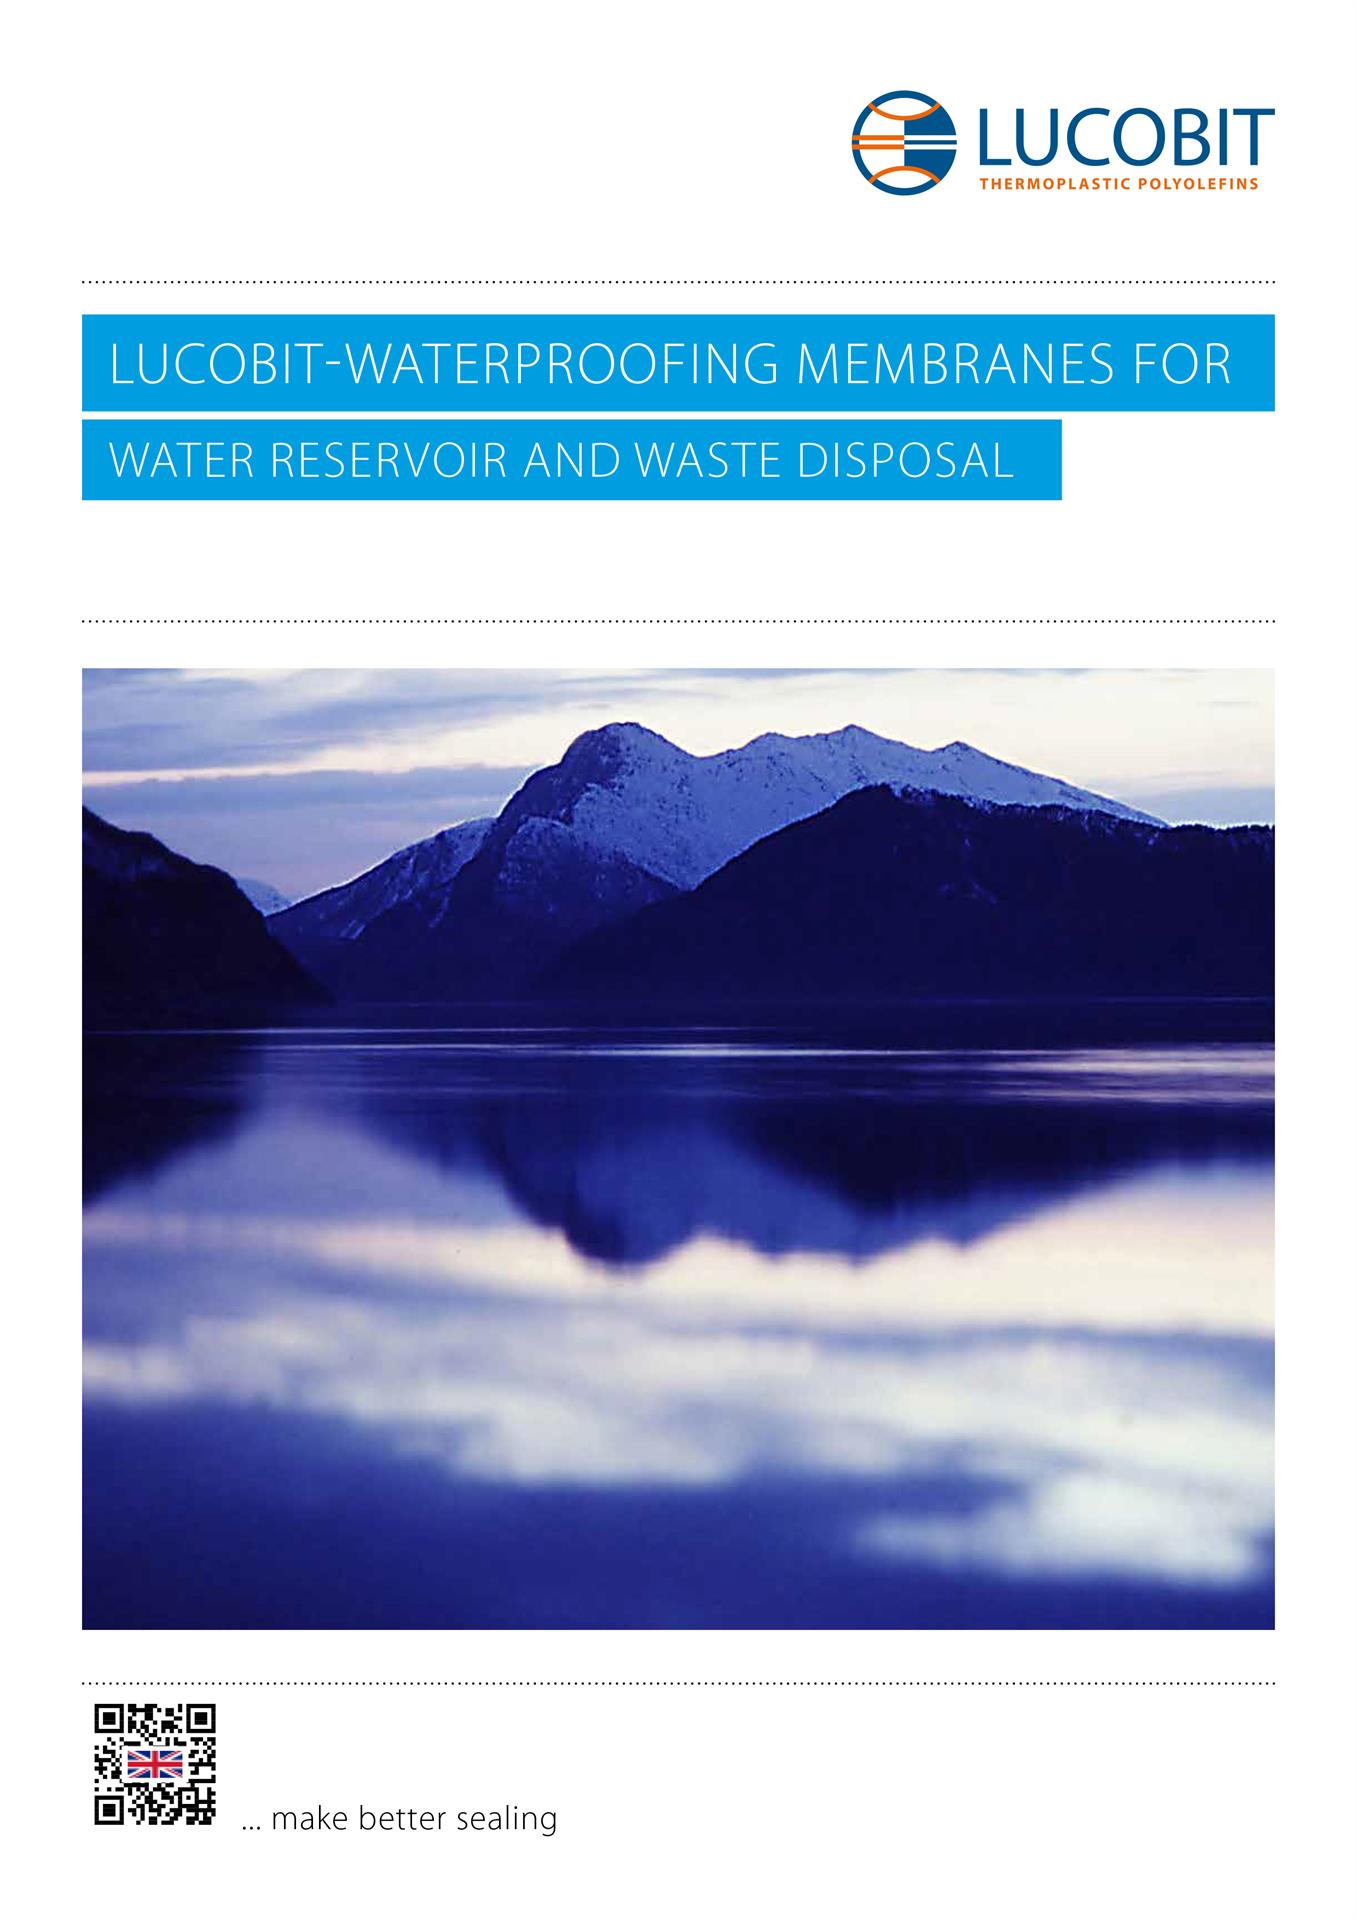 LUCOBIT Broschüre - LUCOBIT-WATERPROOFING MEMBRANES FOR WATER RESERVOIR DISPOSAL